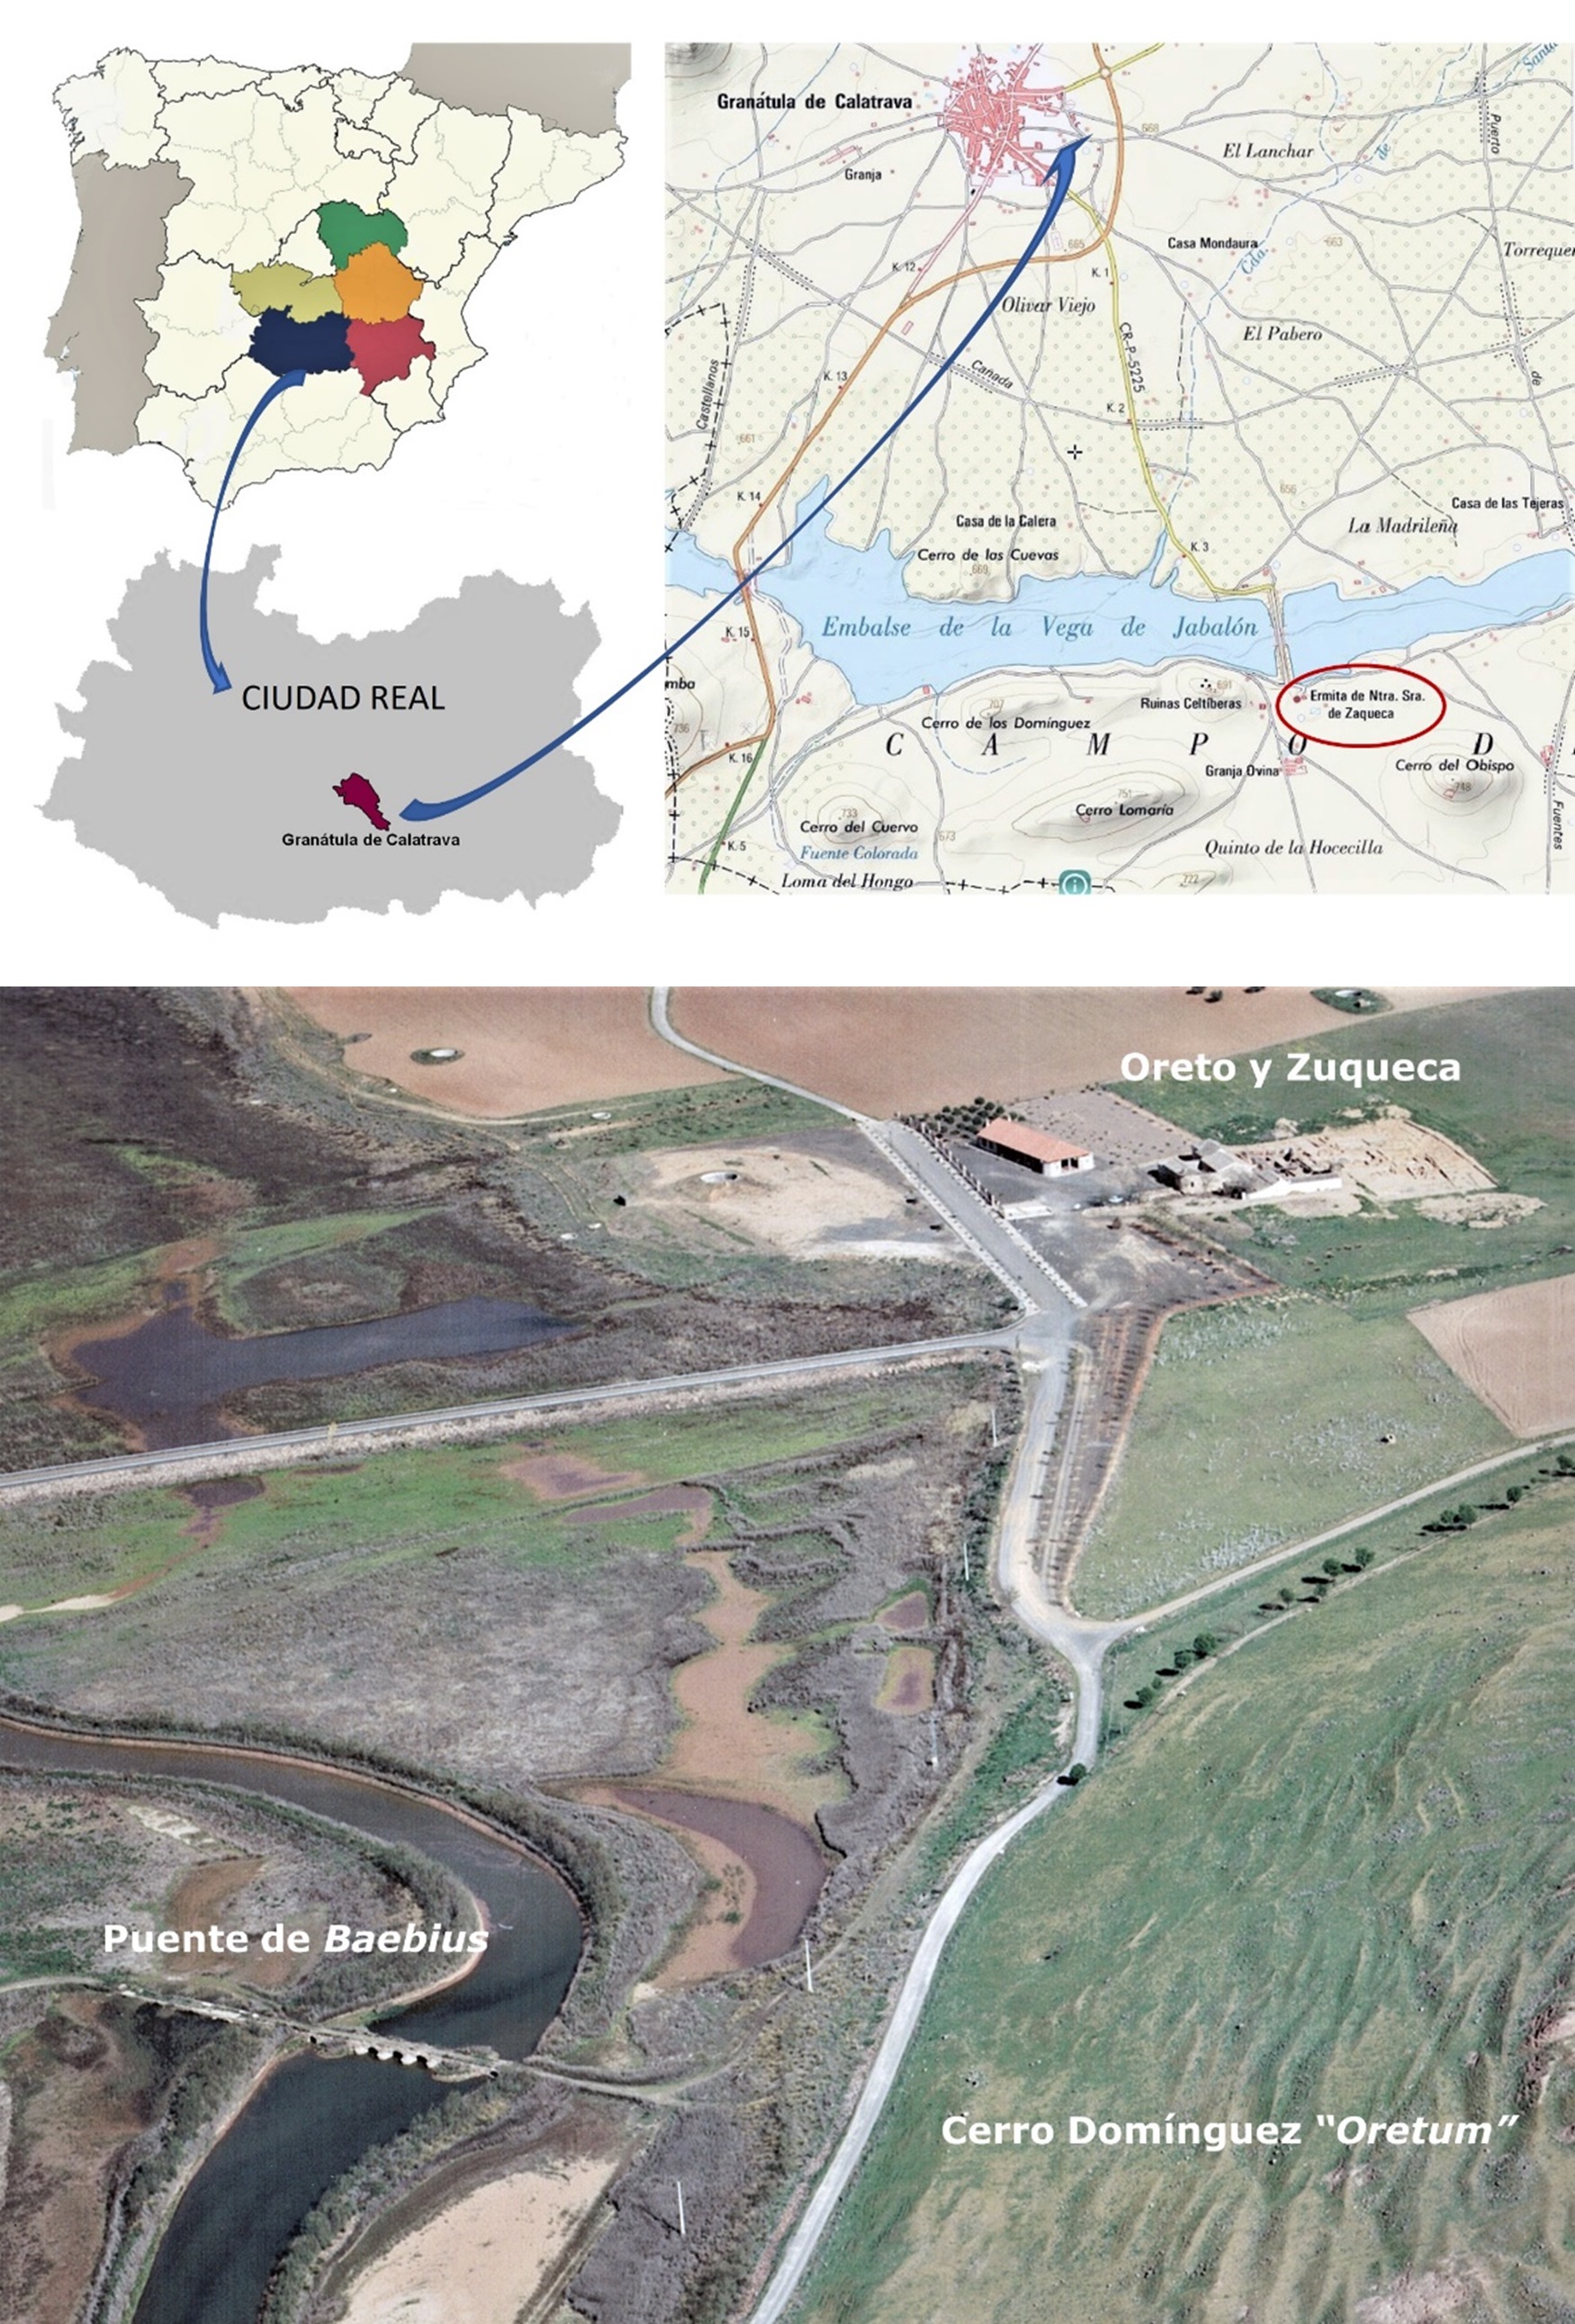 Fig.1. Situación del yacimiento de Oreto y Zuqueca, del puente de Baebius sobre el río Jabalón y del Cerro Domínguez o de Oreto (M.A.C Fotográfica 2003)